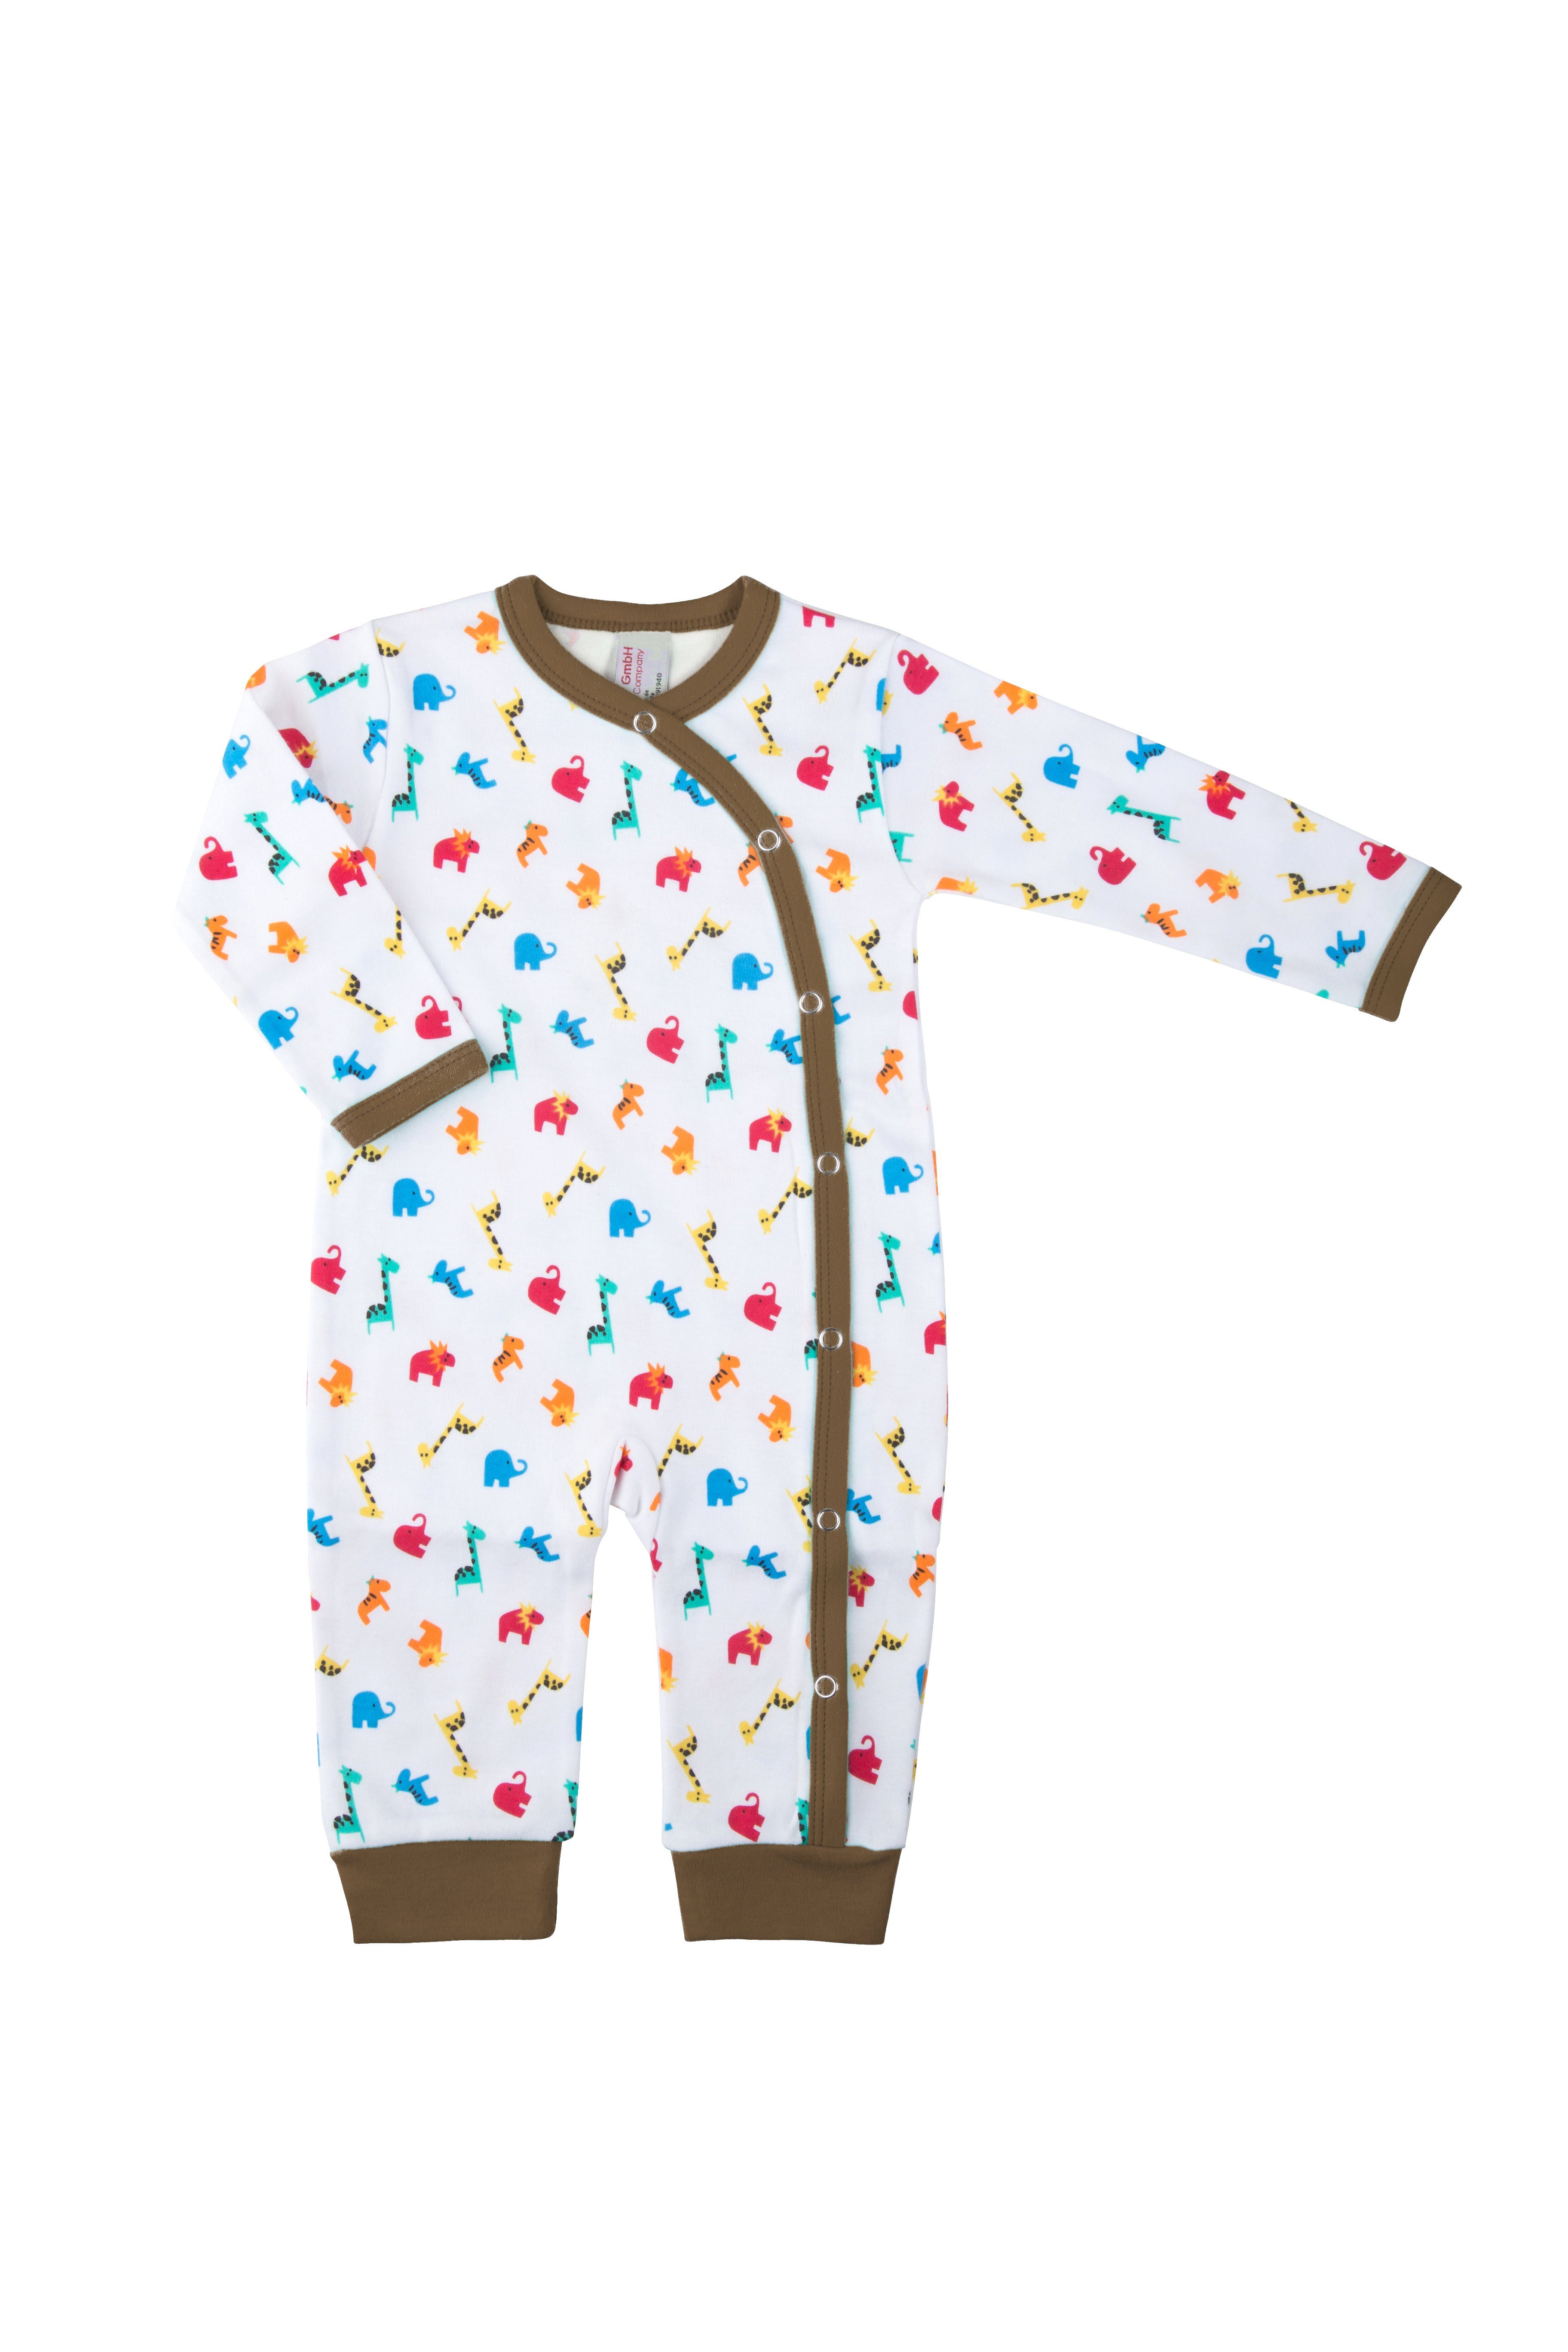 Clinotest Schlafoverall Baby Schlafanzug Braun Zootiere, Jersey, aus Druckknöpfe